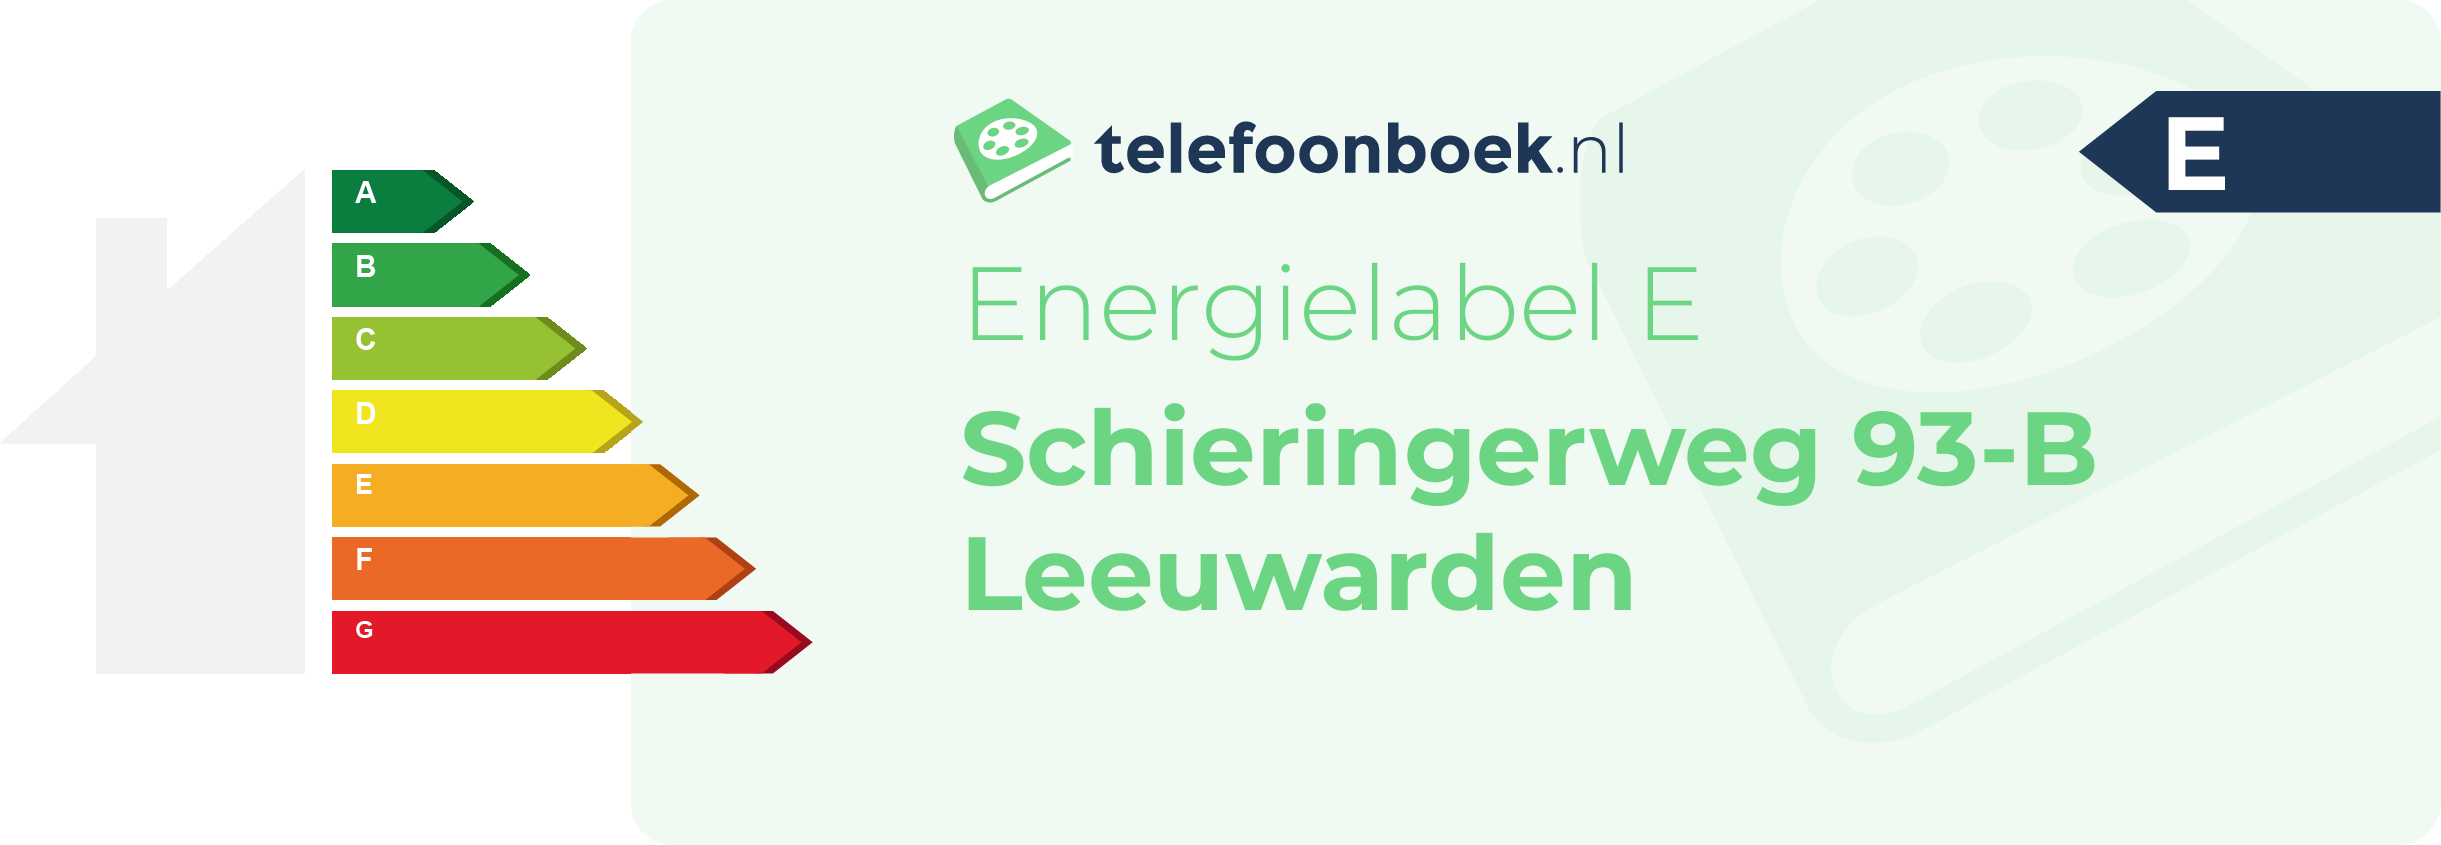 Energielabel Schieringerweg 93-B Leeuwarden